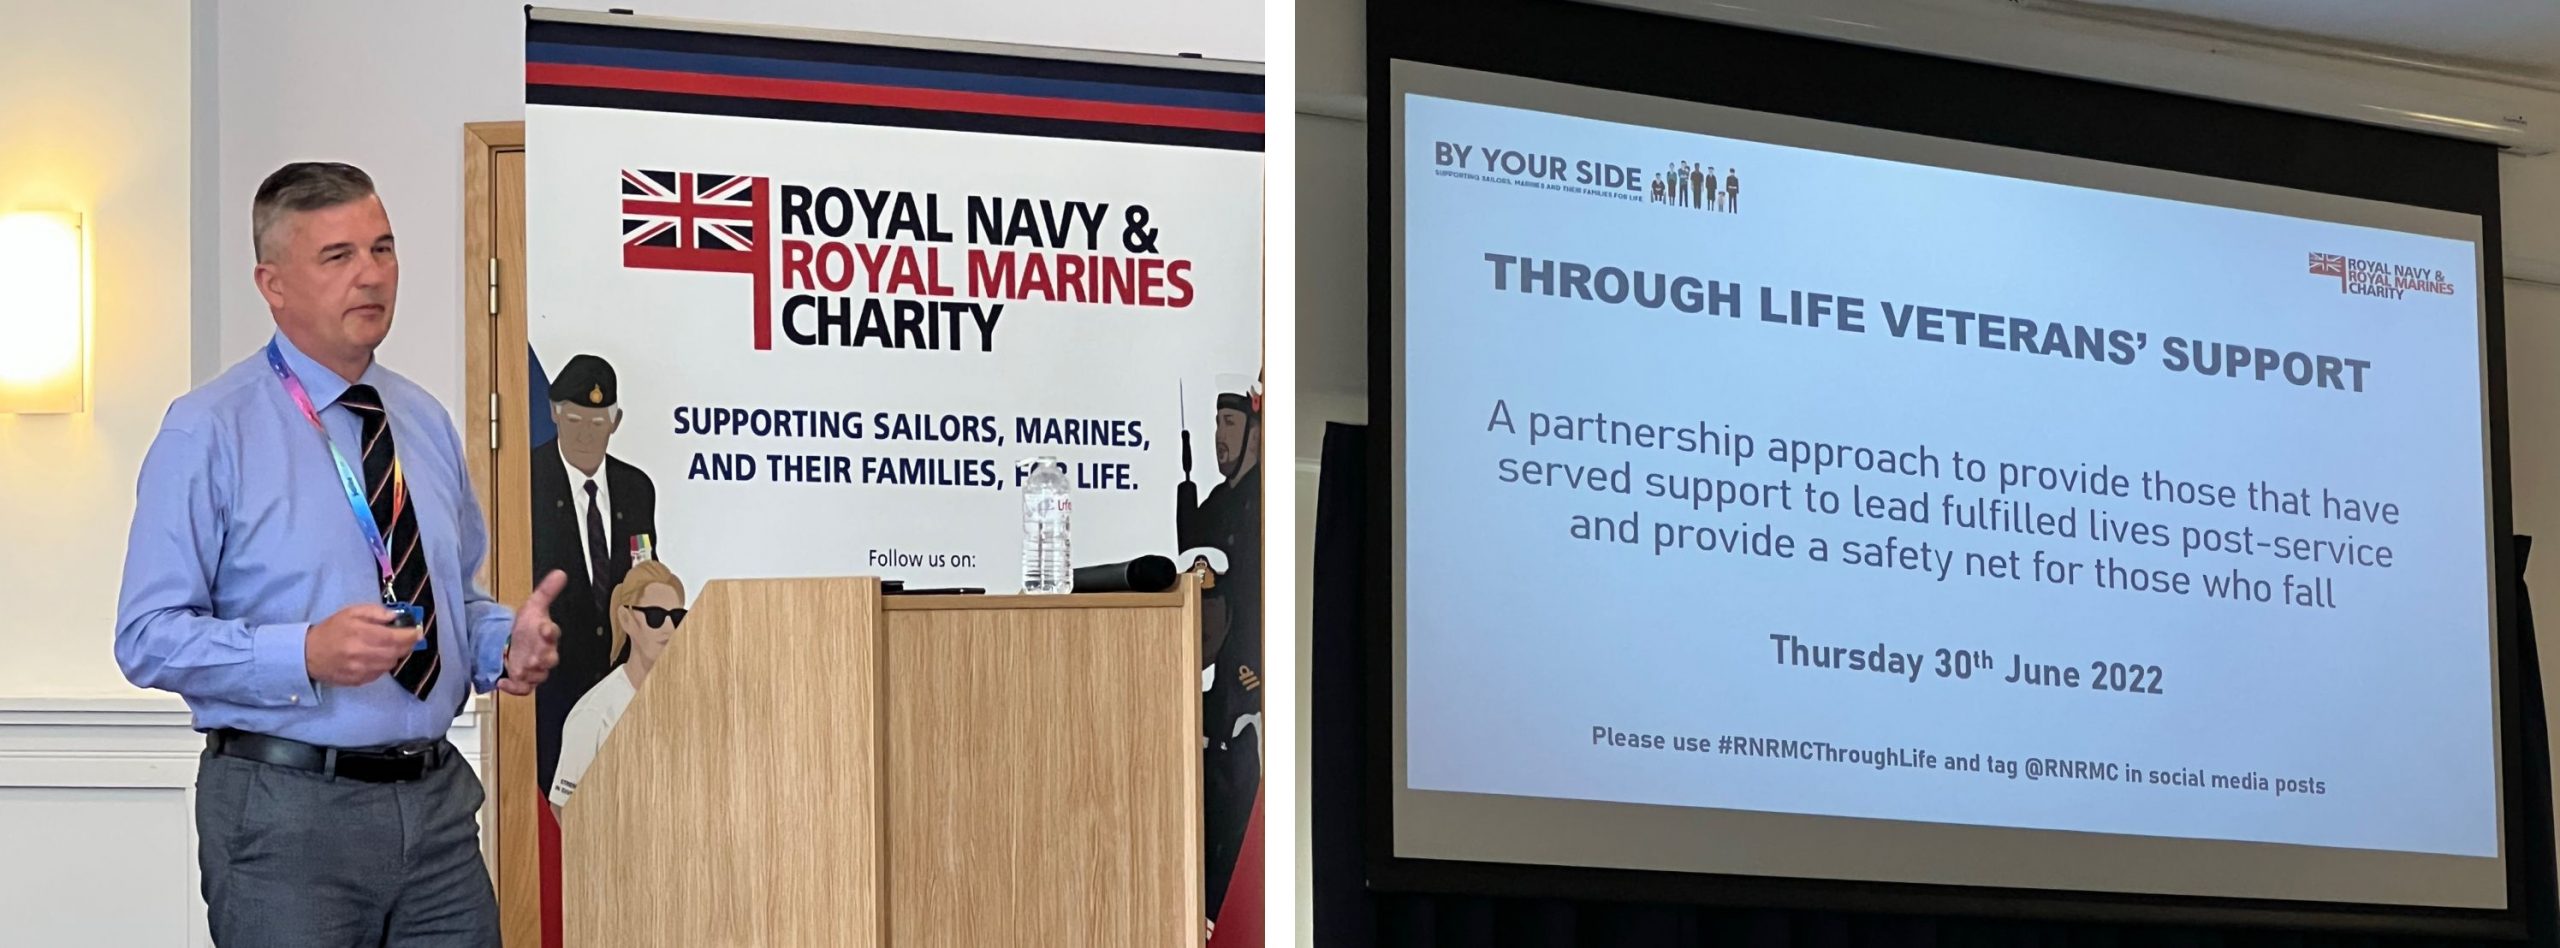 Royal Navy and Royal Marines Charity Workshop June 2022